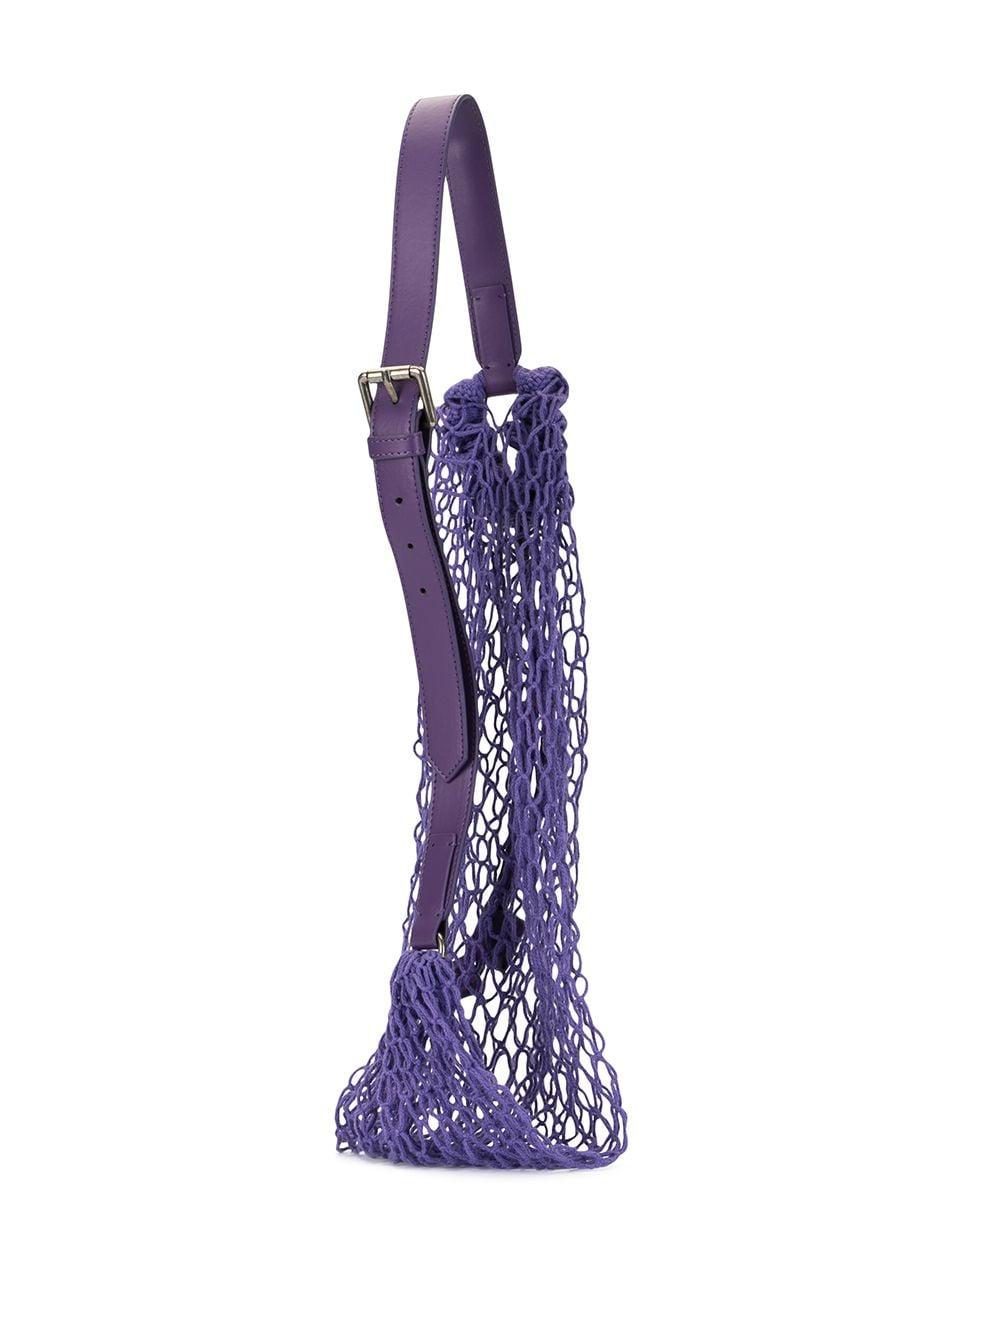 Jacquemus Le Sac Filet Shoulder Bag in Purple - Lyst